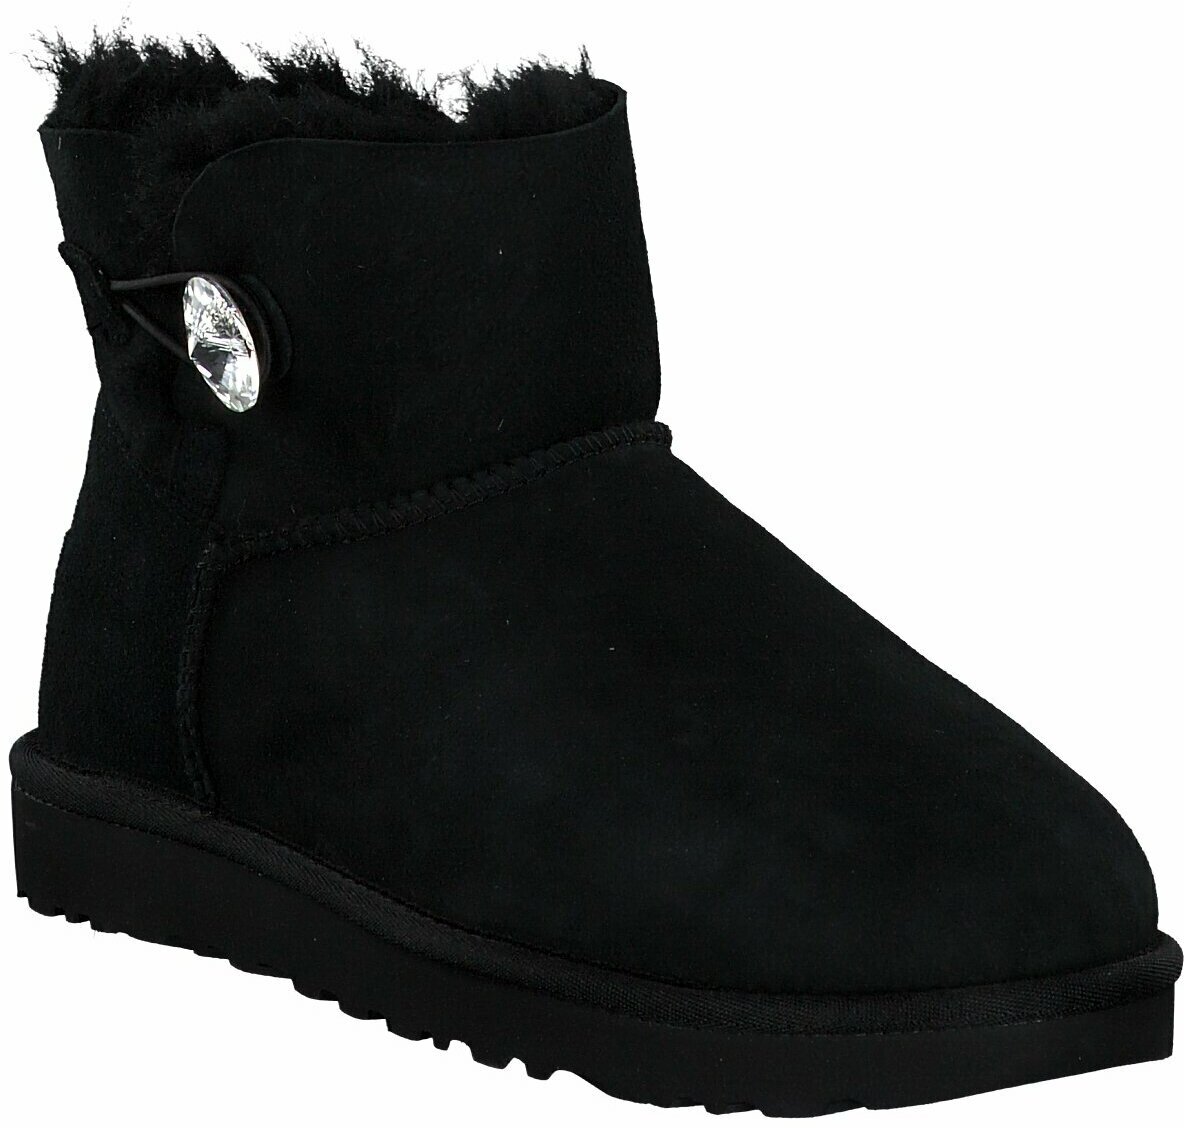 Ugg Australia Winter Boots Fur Damen In Schwarz Winter Stiefel 372788 Schwarz Leder Damenschuhe